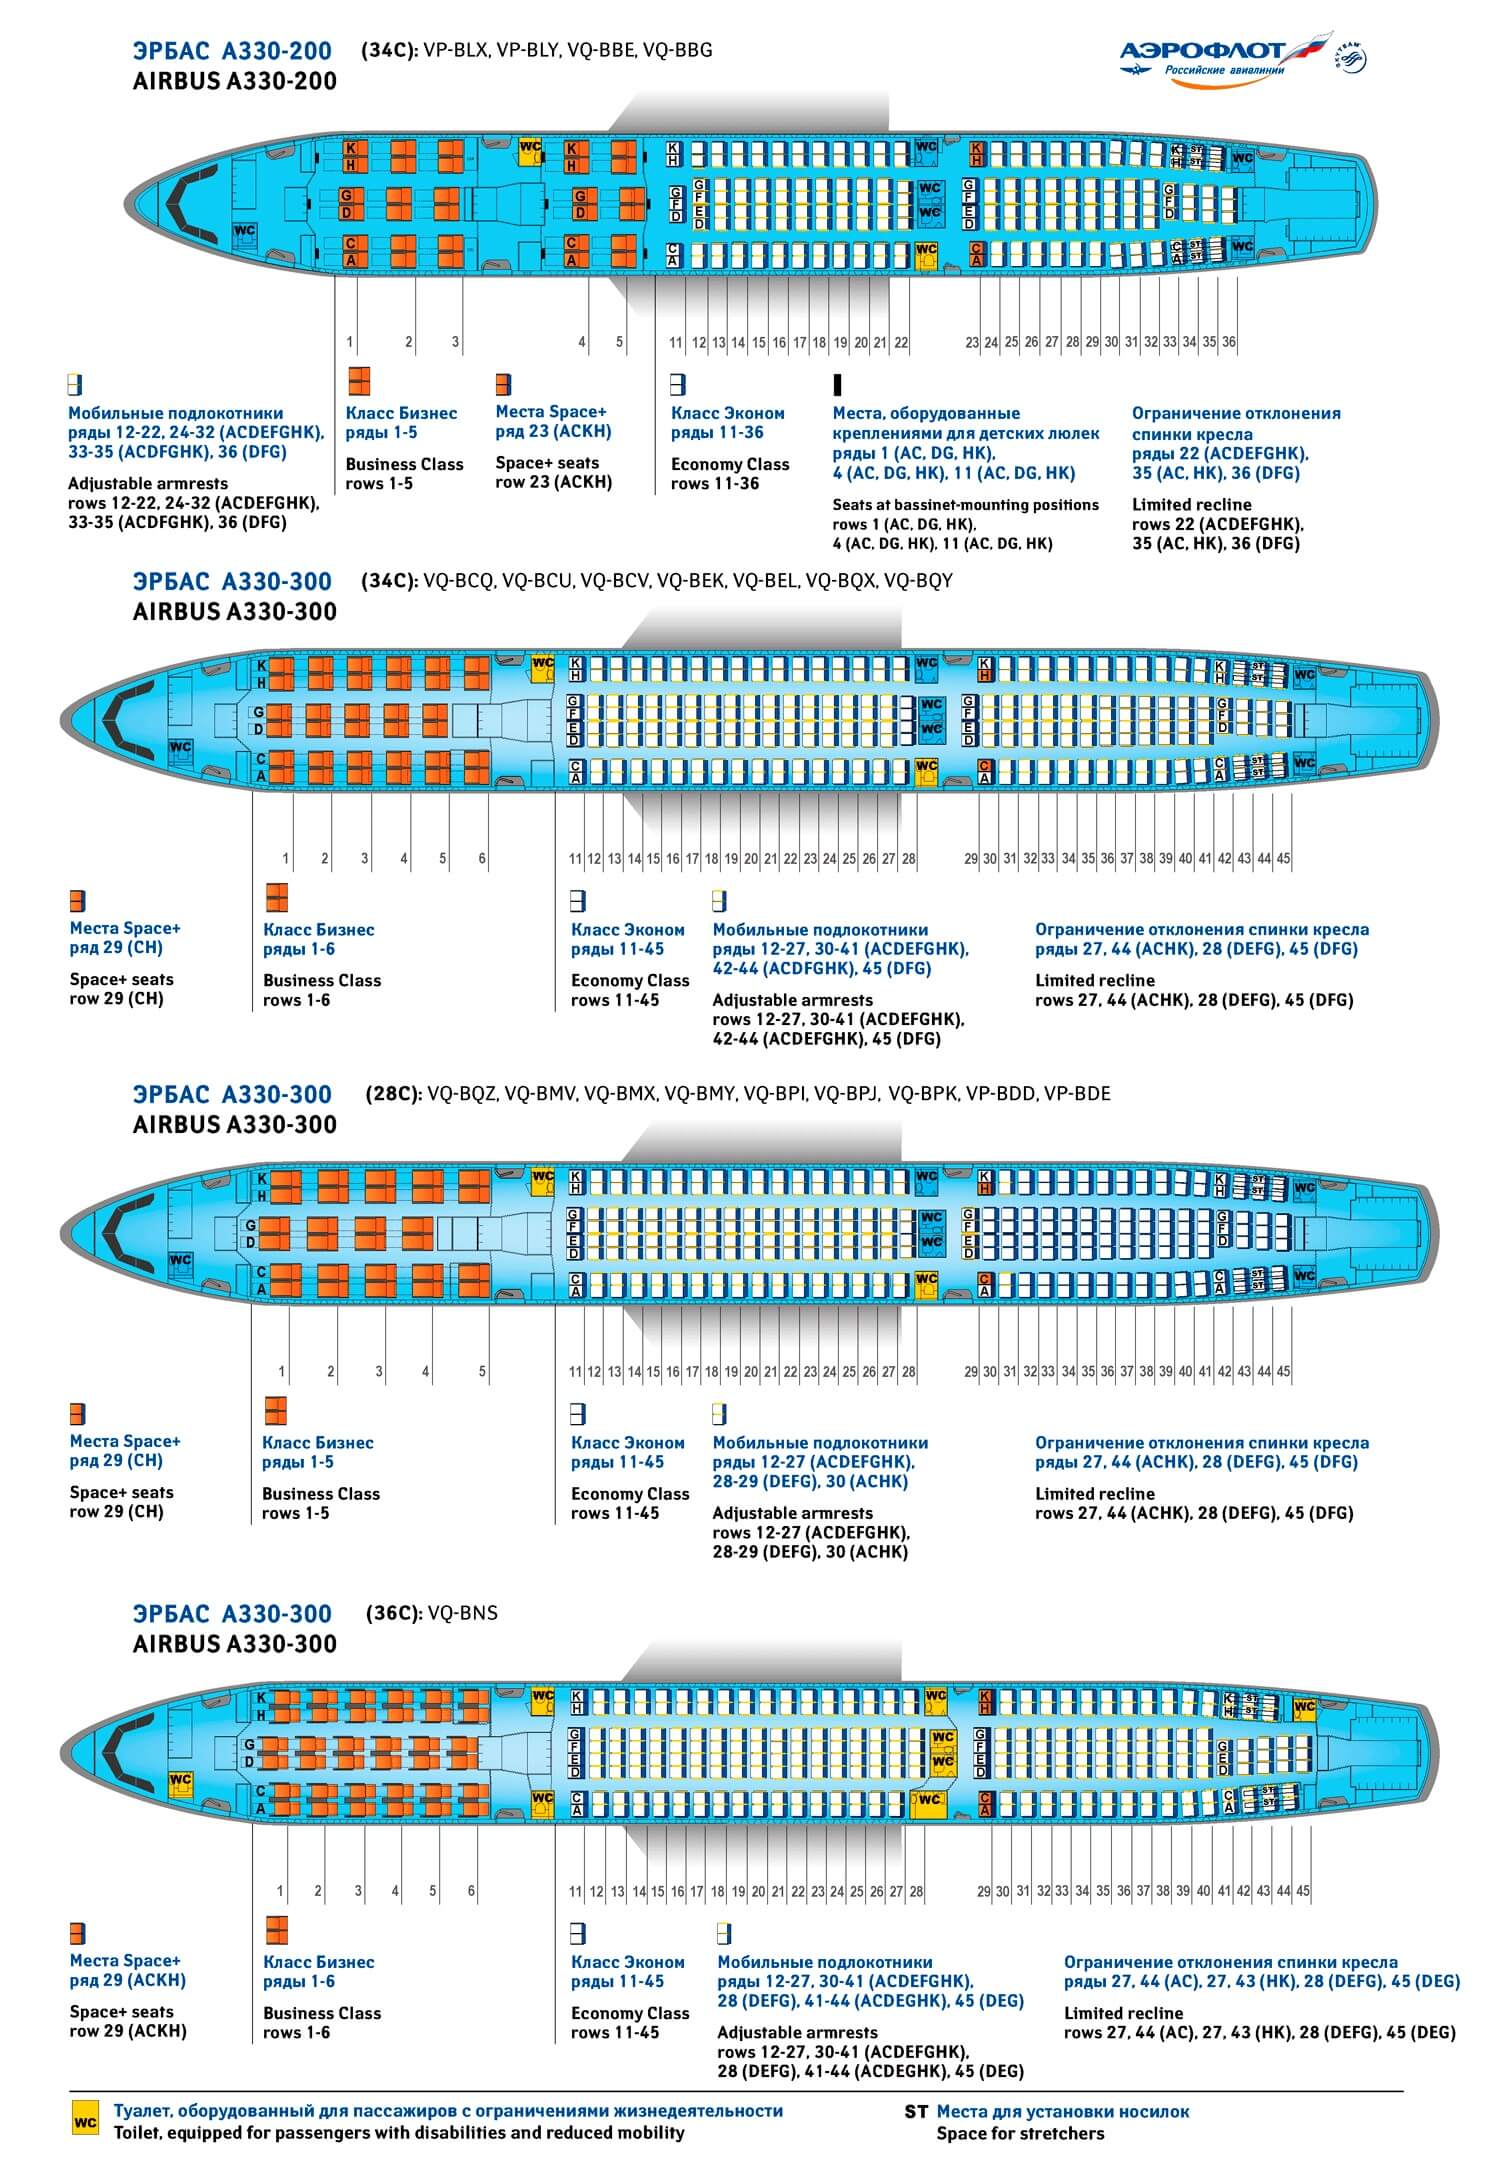  Схема посадки Airbus А330-200 и А330-300